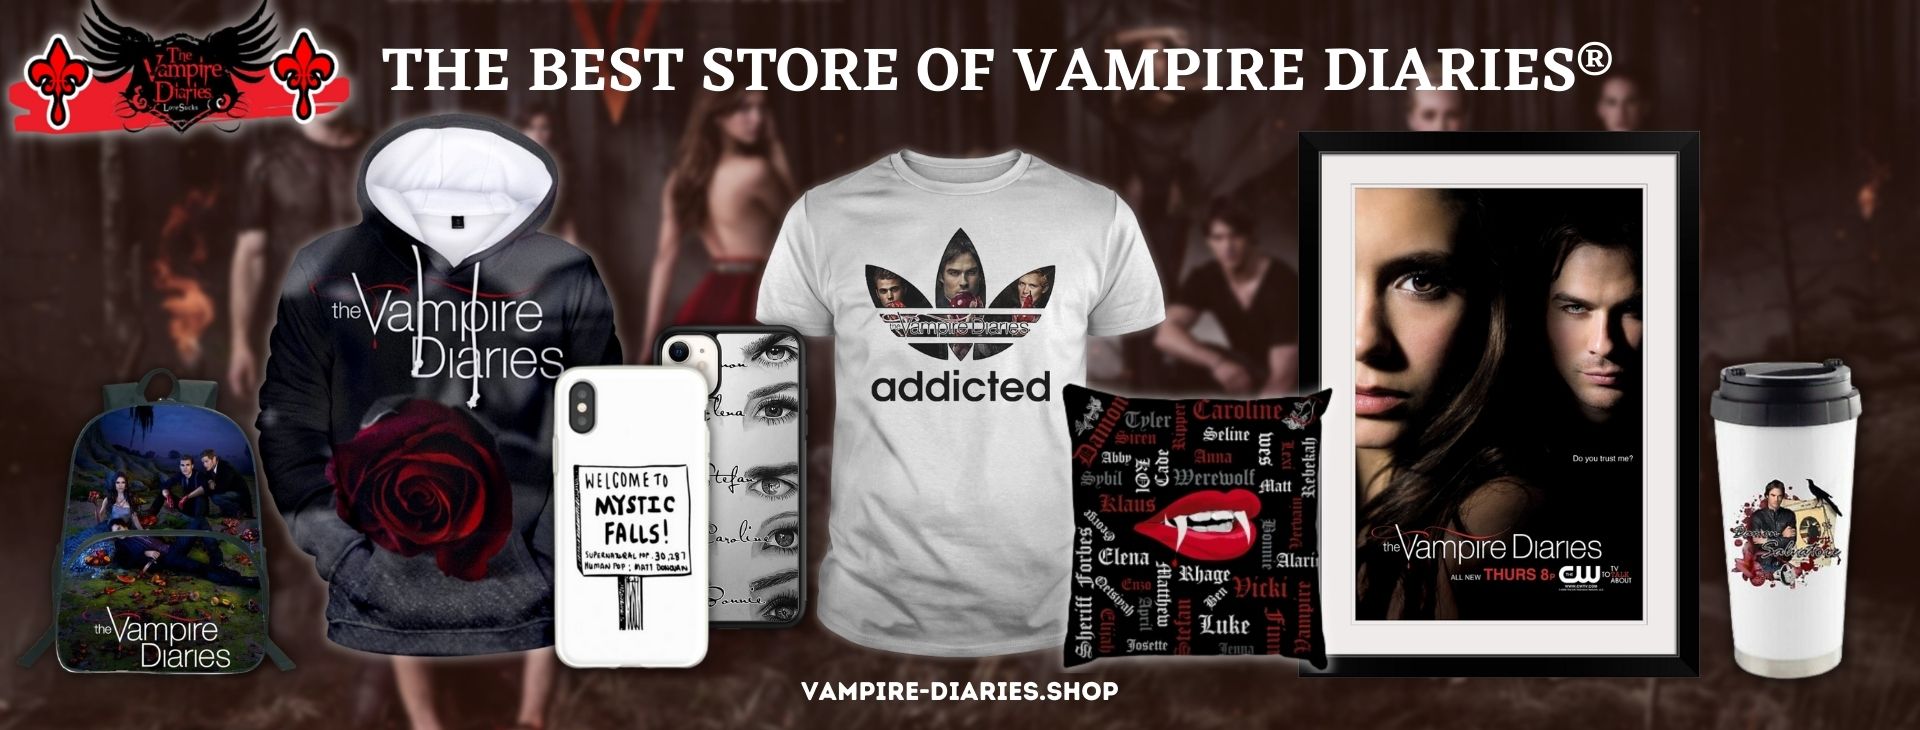 Vampire Diaries Shop Banner - Vampire Diaries Shop